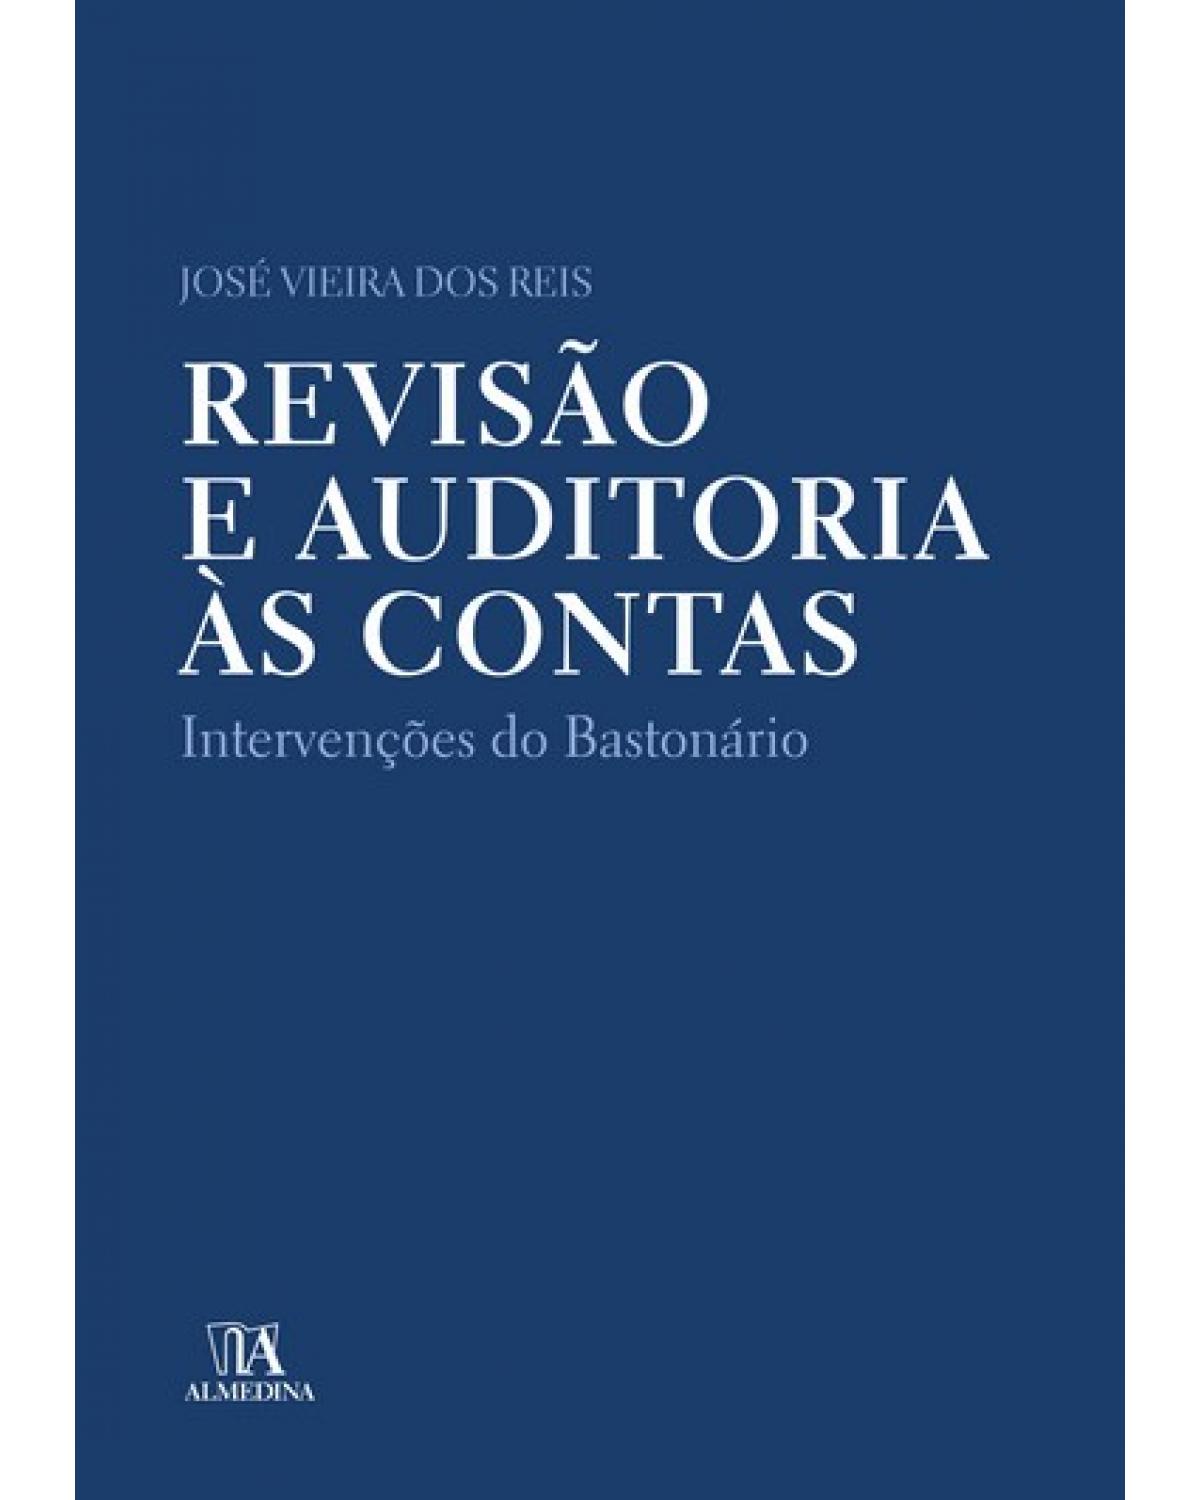 Revisão e auditoria às contas - intervenções do bastonário - 1ª Edição | 2008